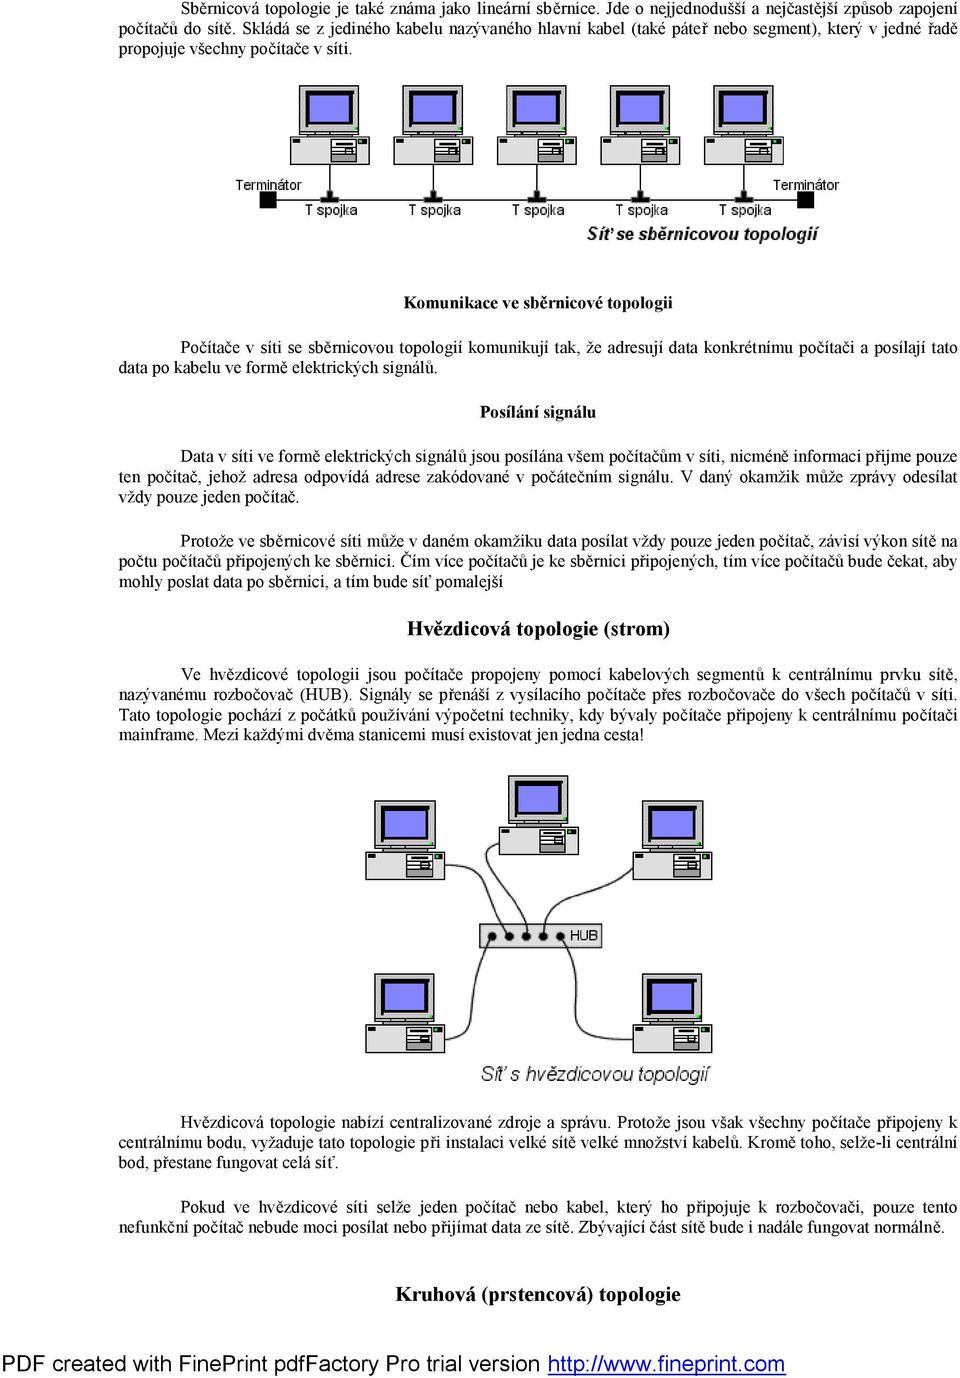 Komunikace ve sběrnicové topologii Počítače v síti se sběrnicovou topologií komunikují tak, že adresují data konkrétnímu počítači a posílají tato data po kabelu ve formě elektrických signálů.